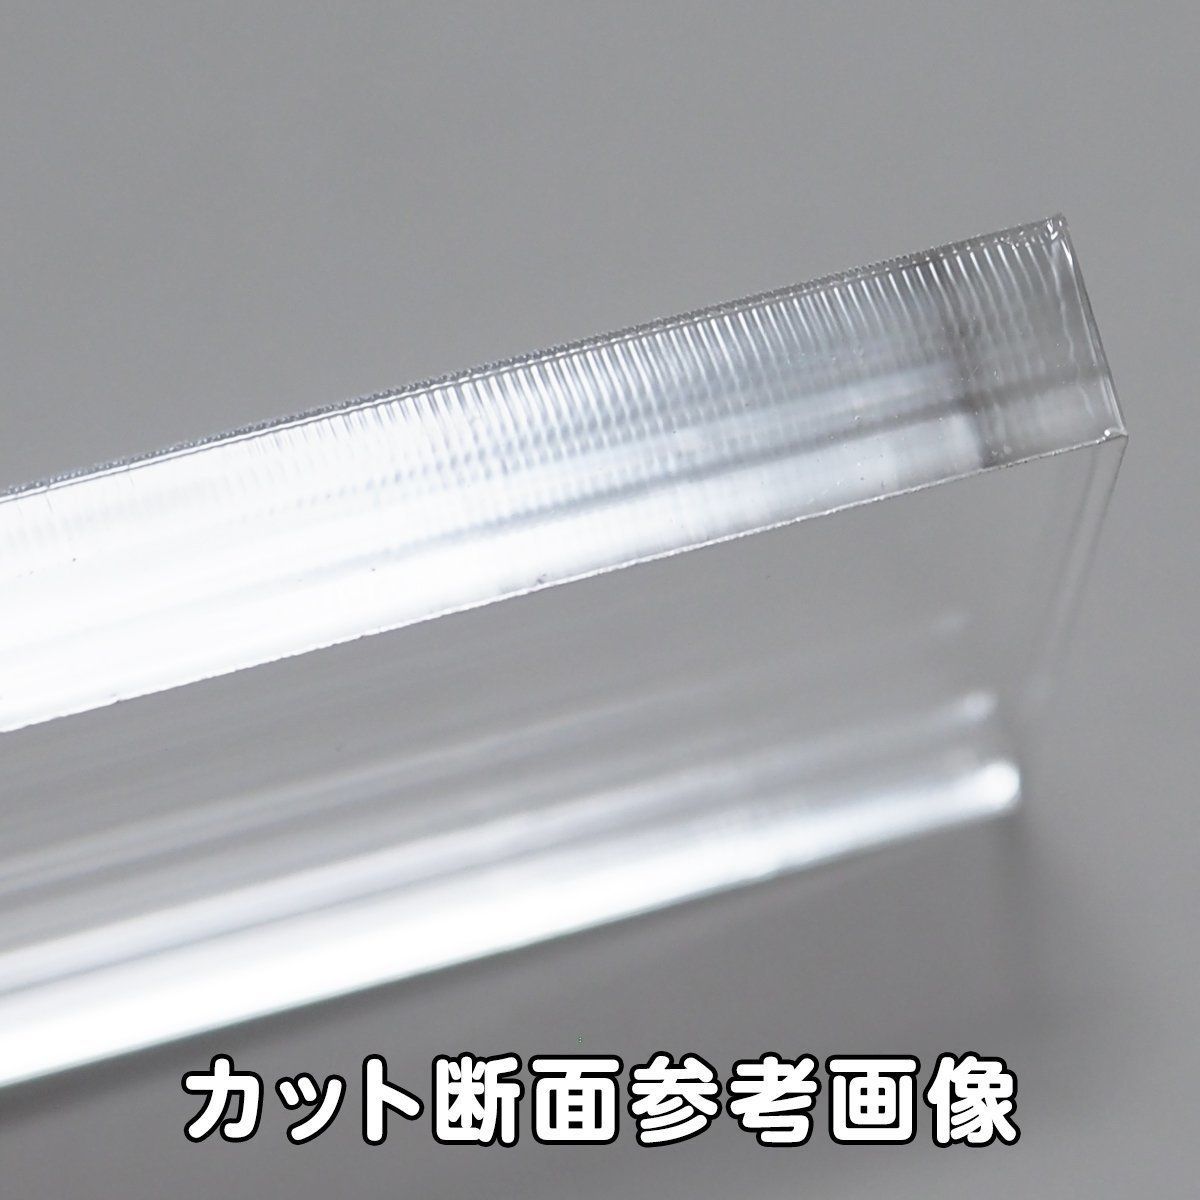 透明 アクリル 8mm厚 正方形 4cm 4個セット - メルカリ